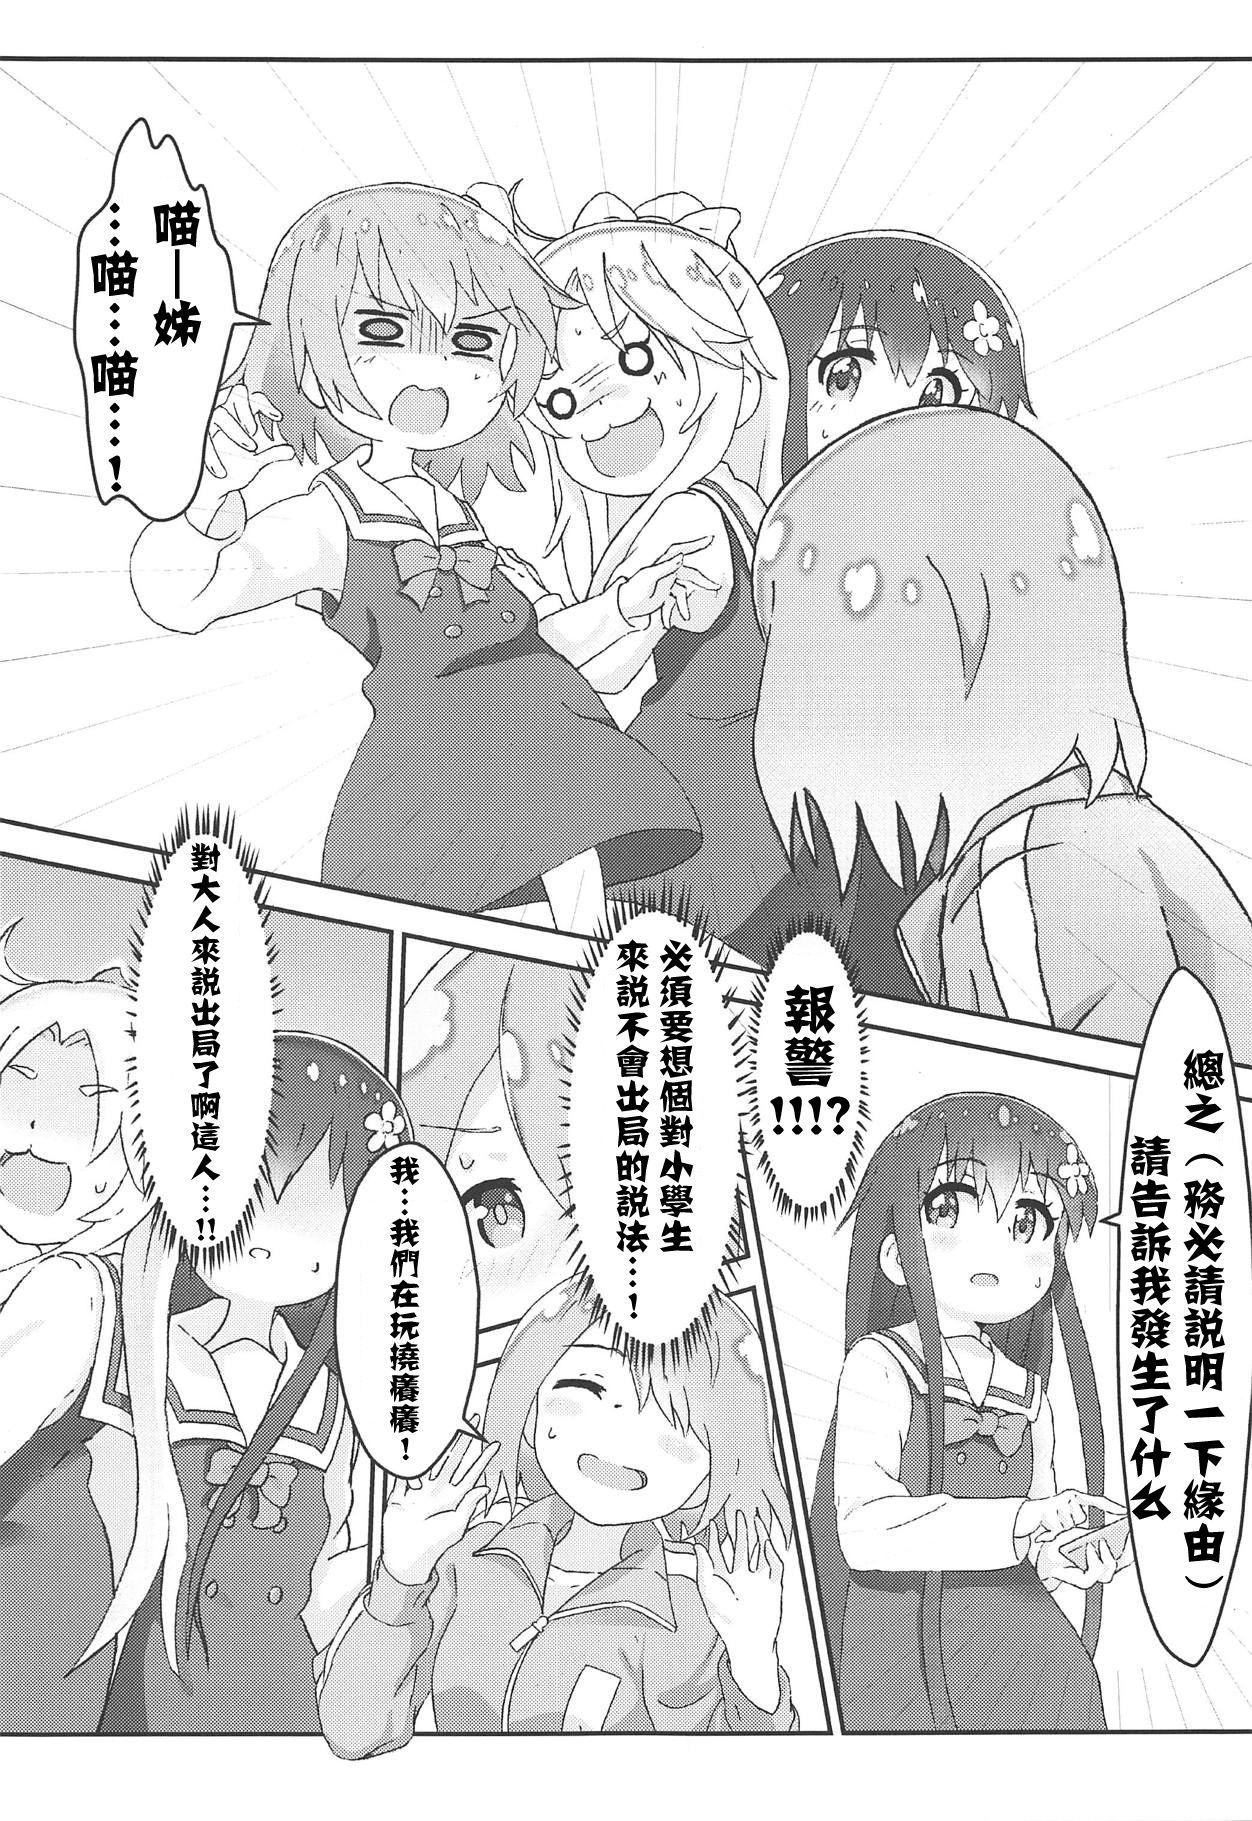 Throatfuck Watashi ni Yama Susume Shoujo ga Maiorita! - Watashi ni tenshi ga maiorita Yama no susume Gay Friend - Page 11